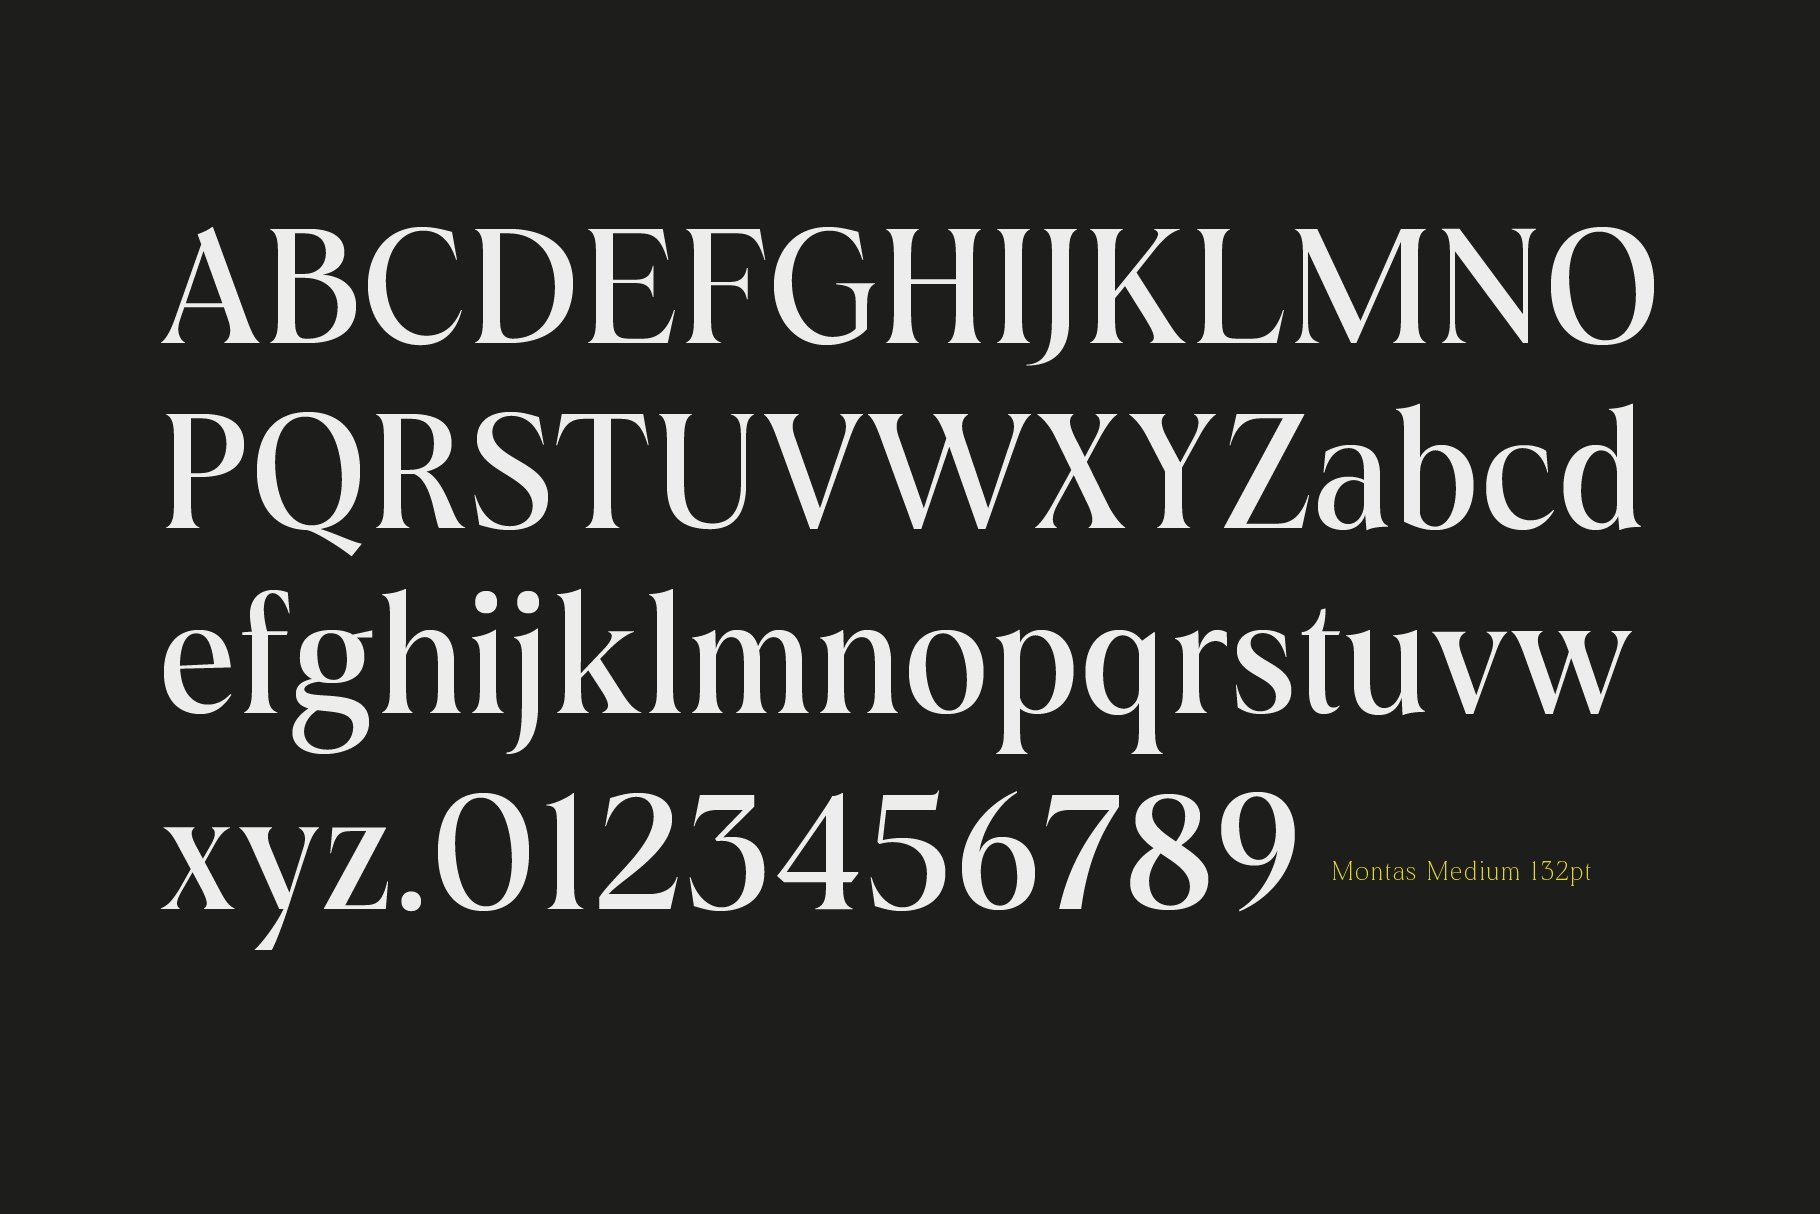 13 montas modern display serif 498